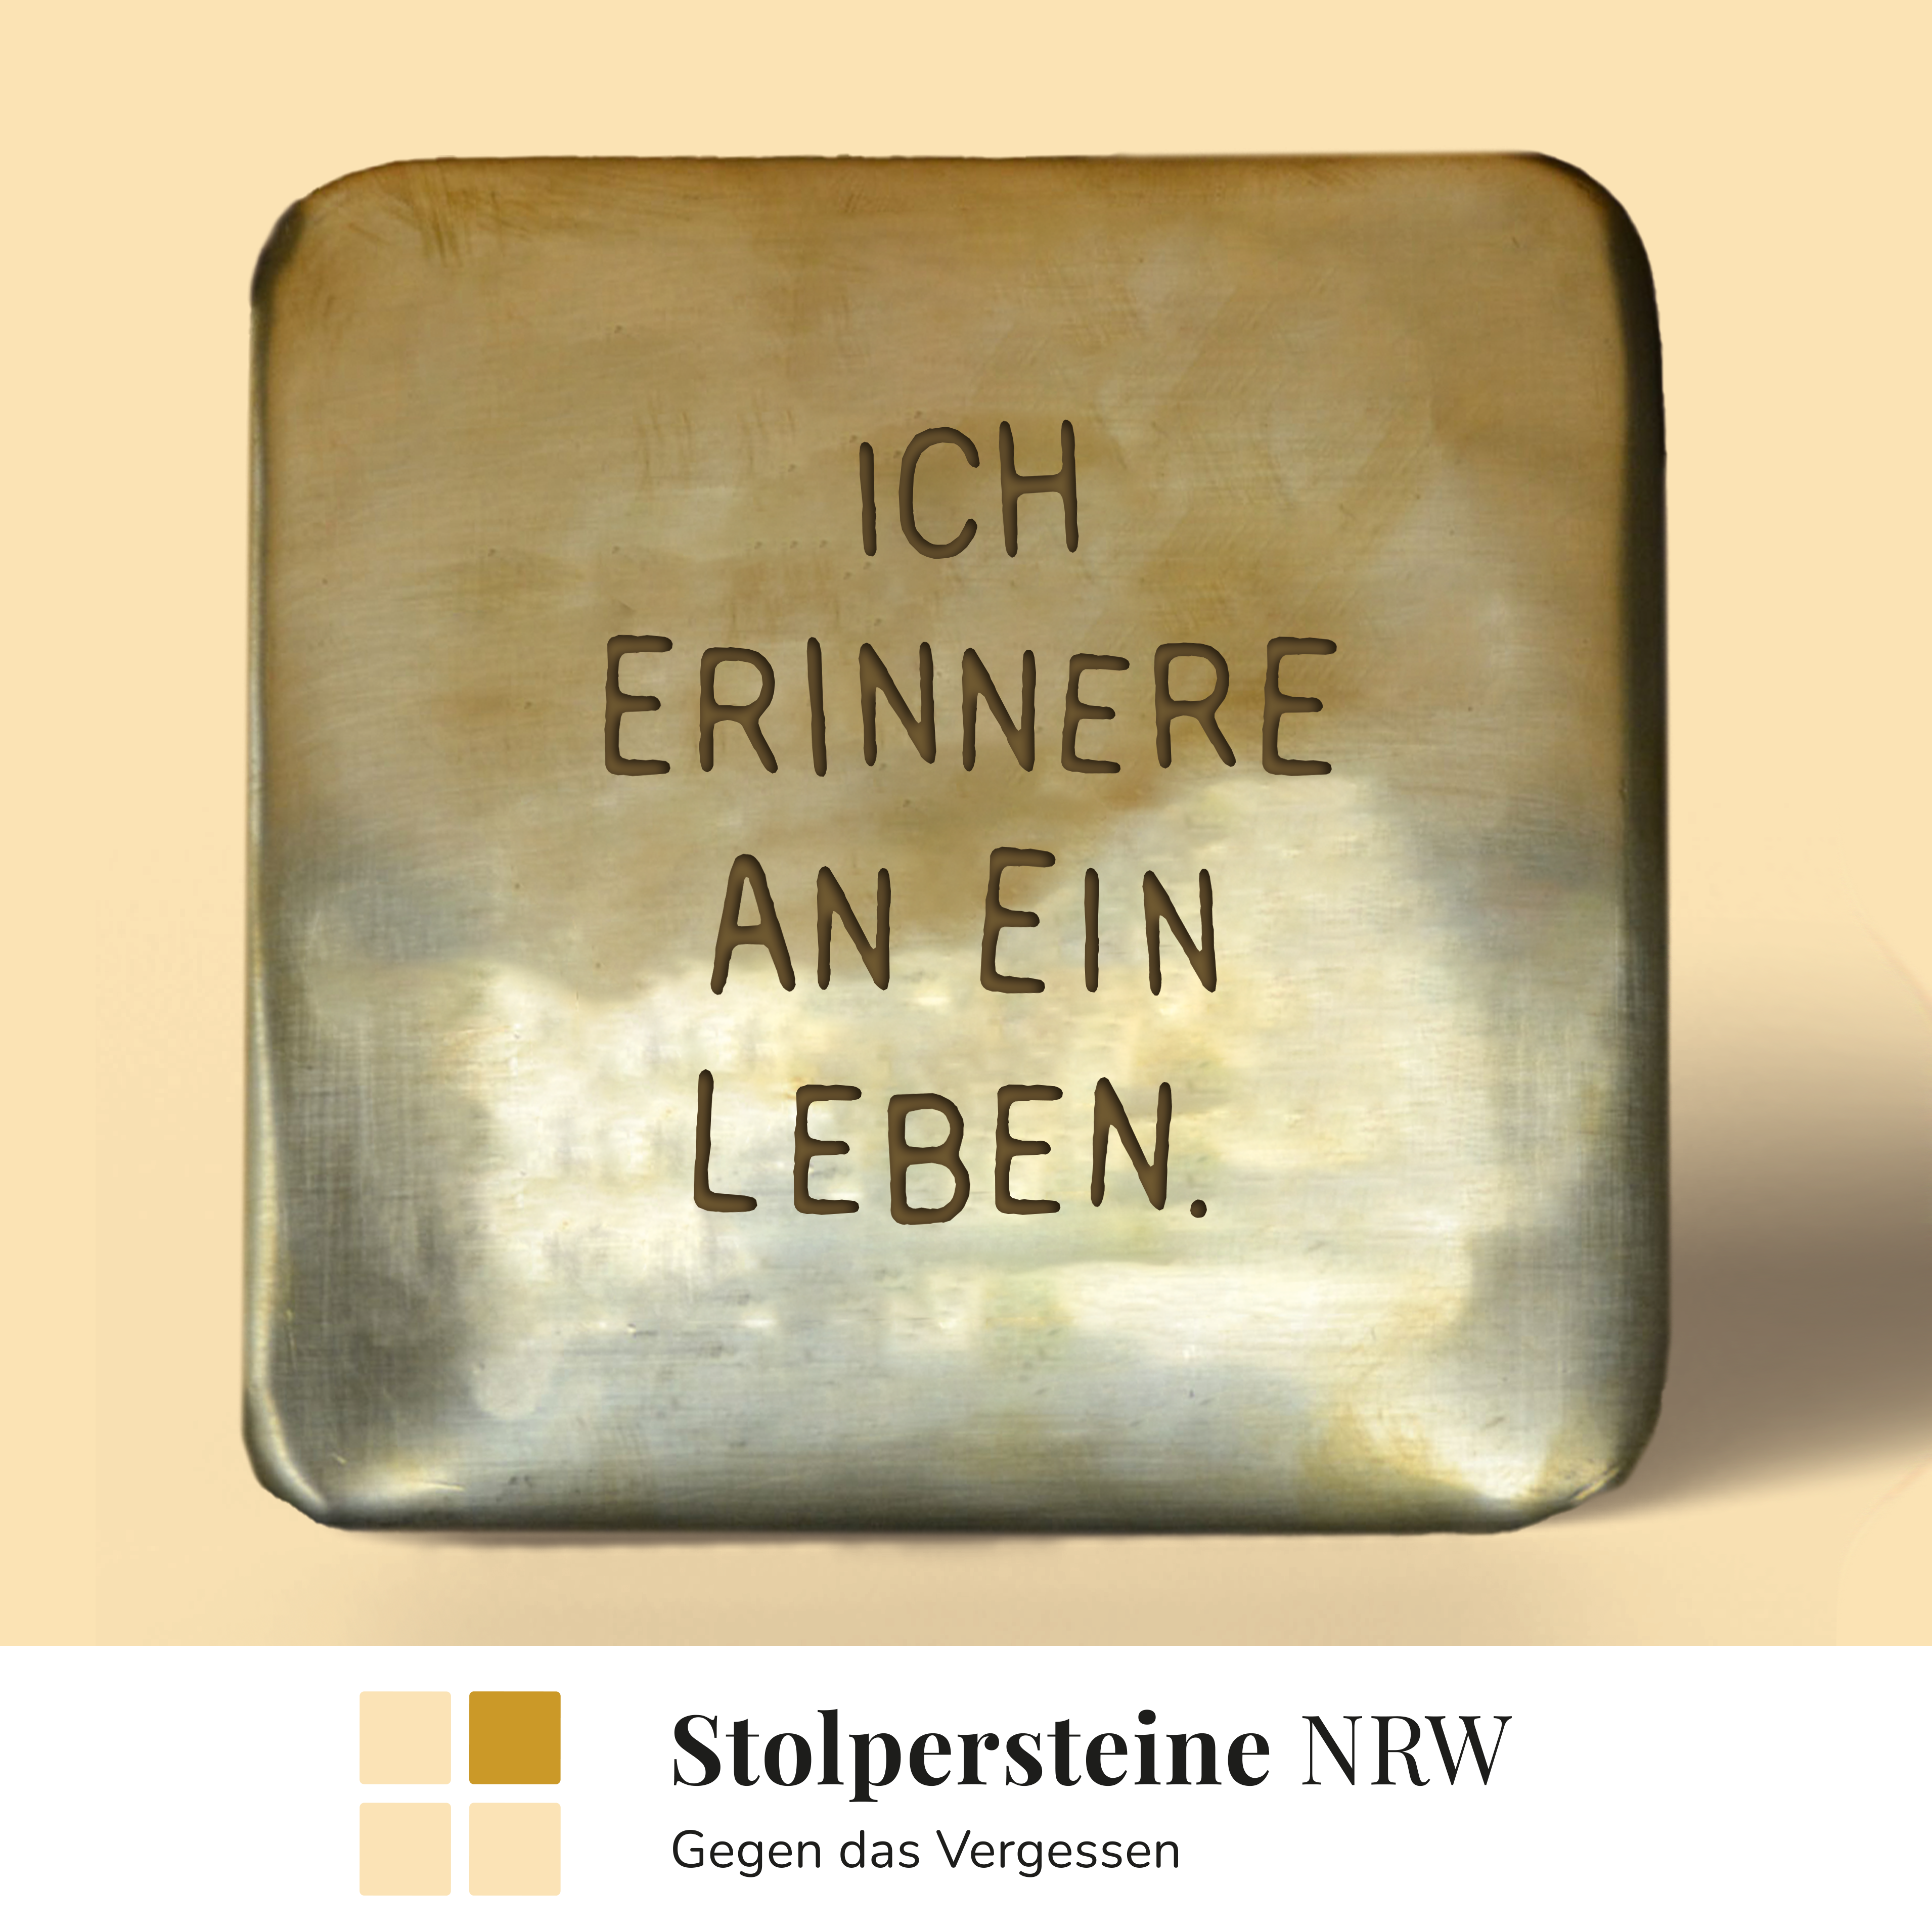 Image for Stolpersteine NRW